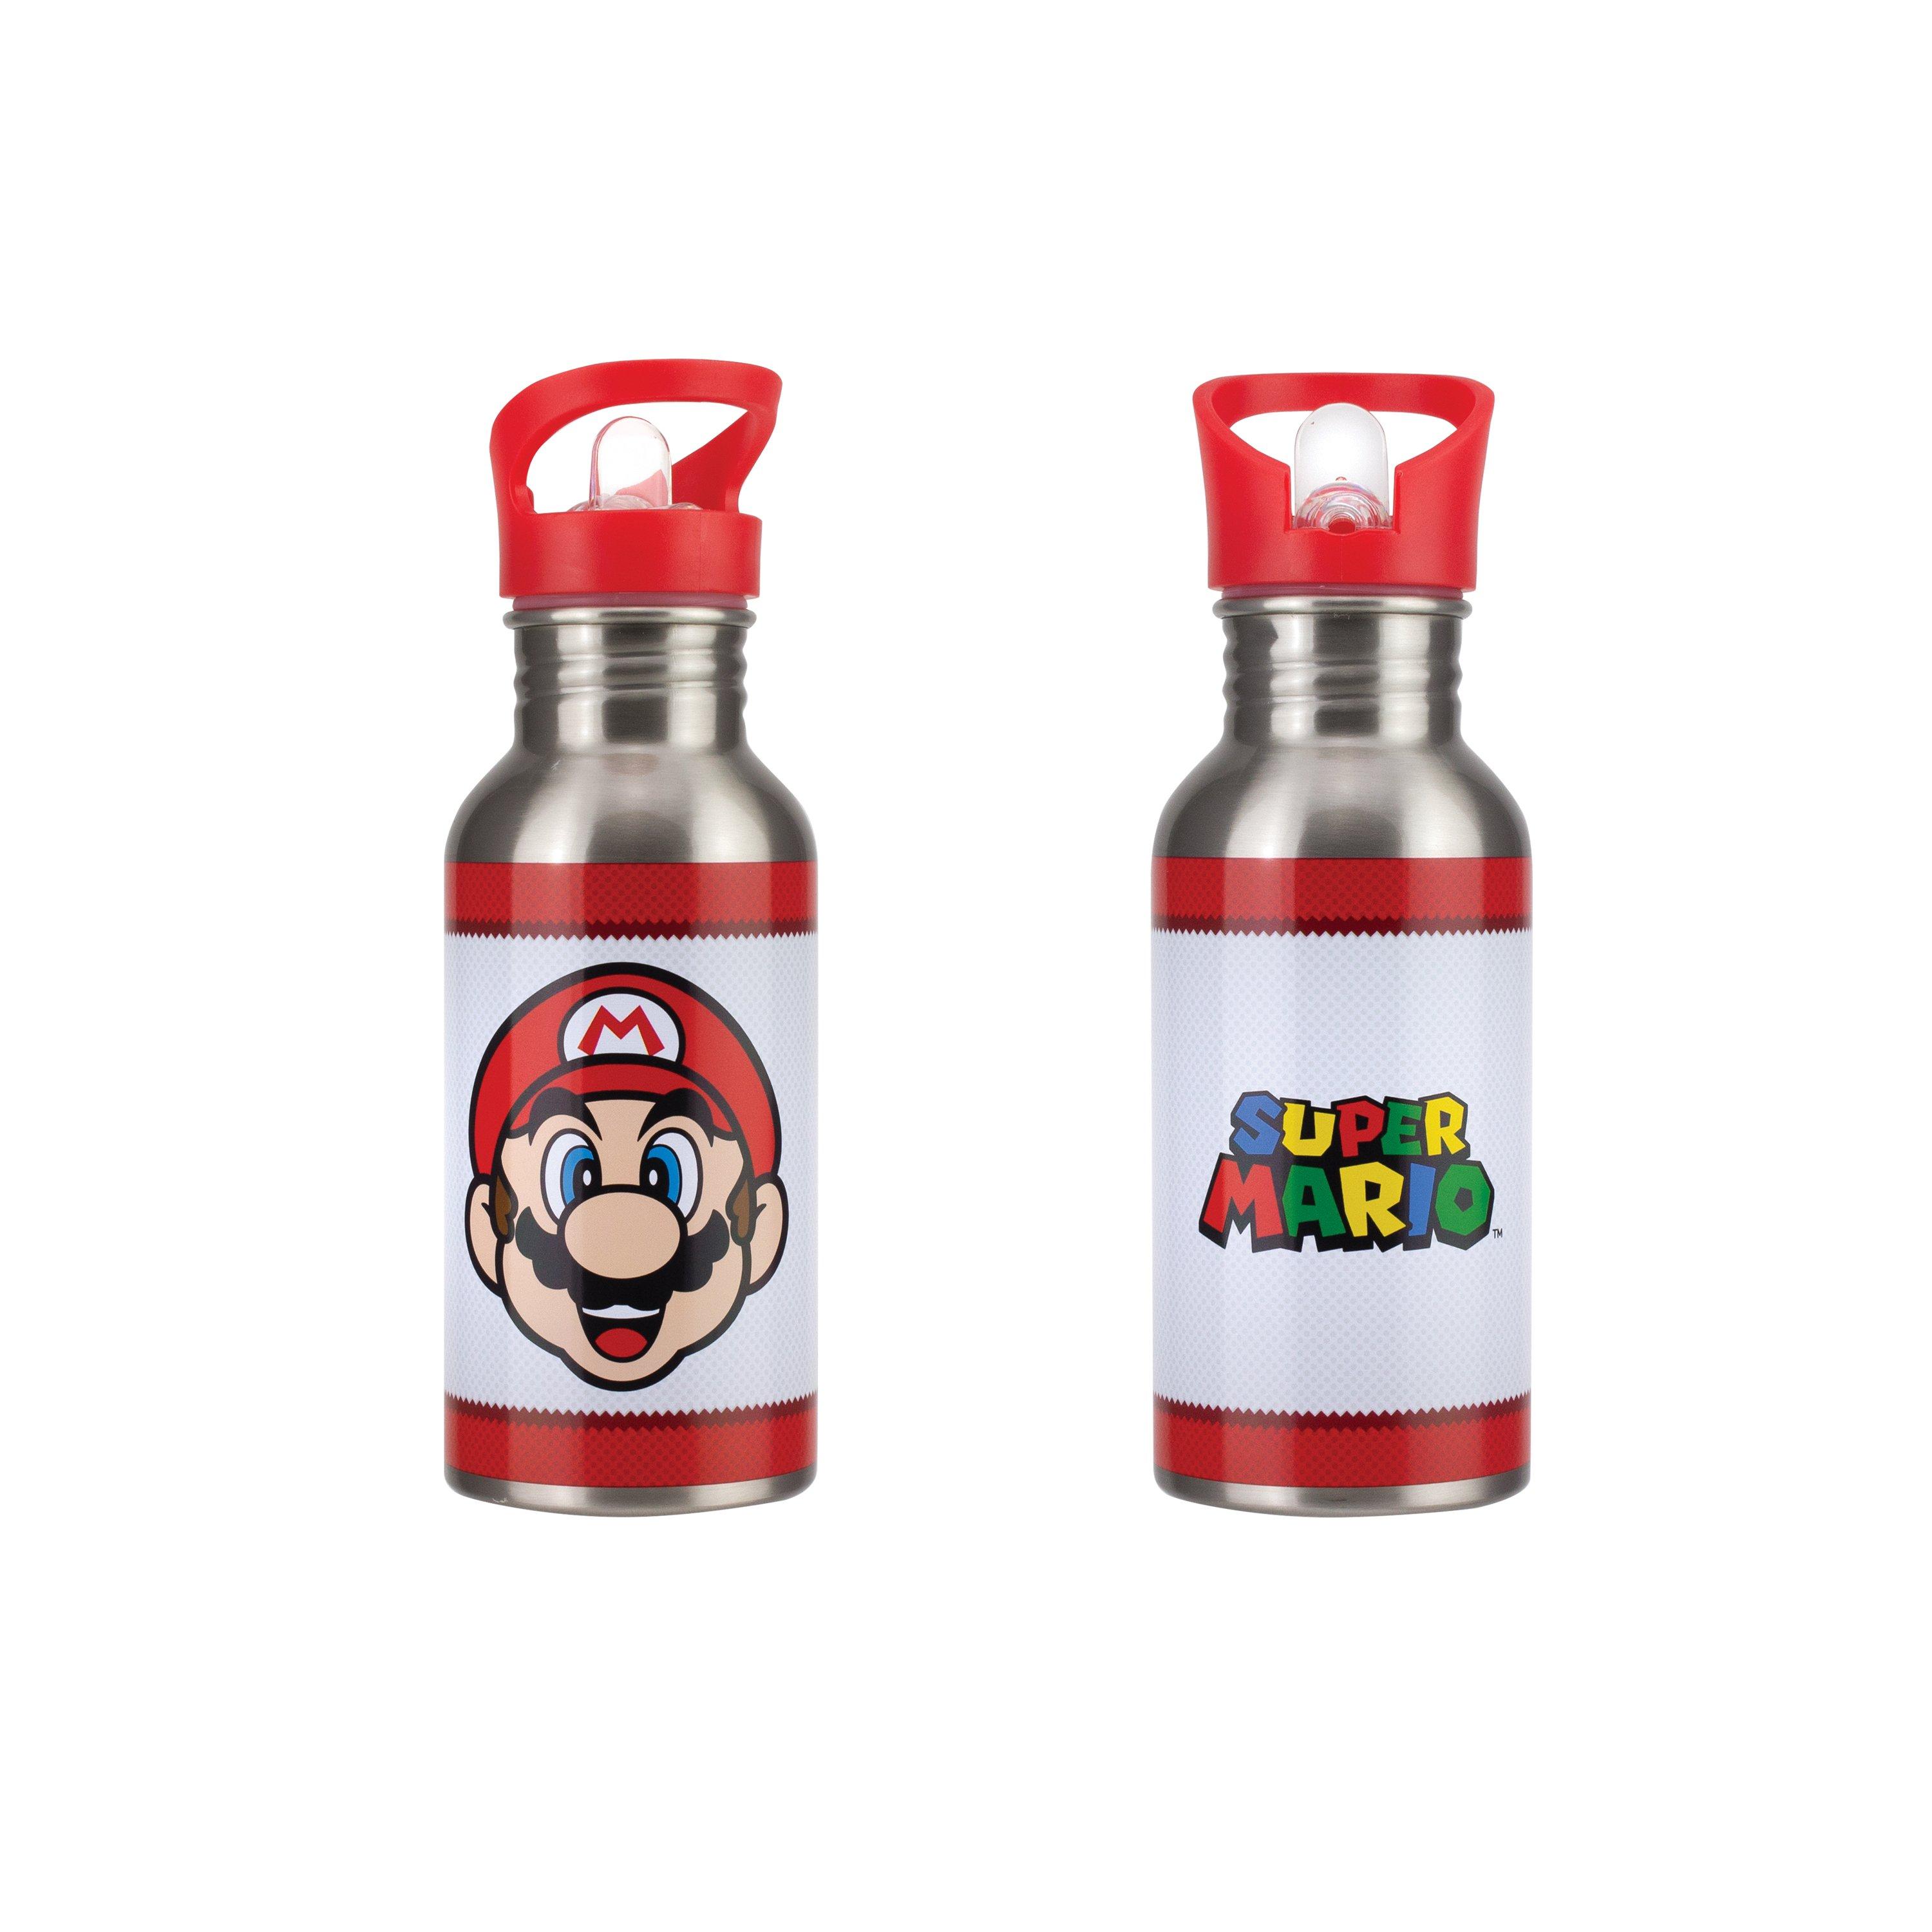 https://media.gamestop.com/i/gamestop/20002866_ALT03/Super-Mario-Metal-Water-Bottle-with-Straw?$pdp$